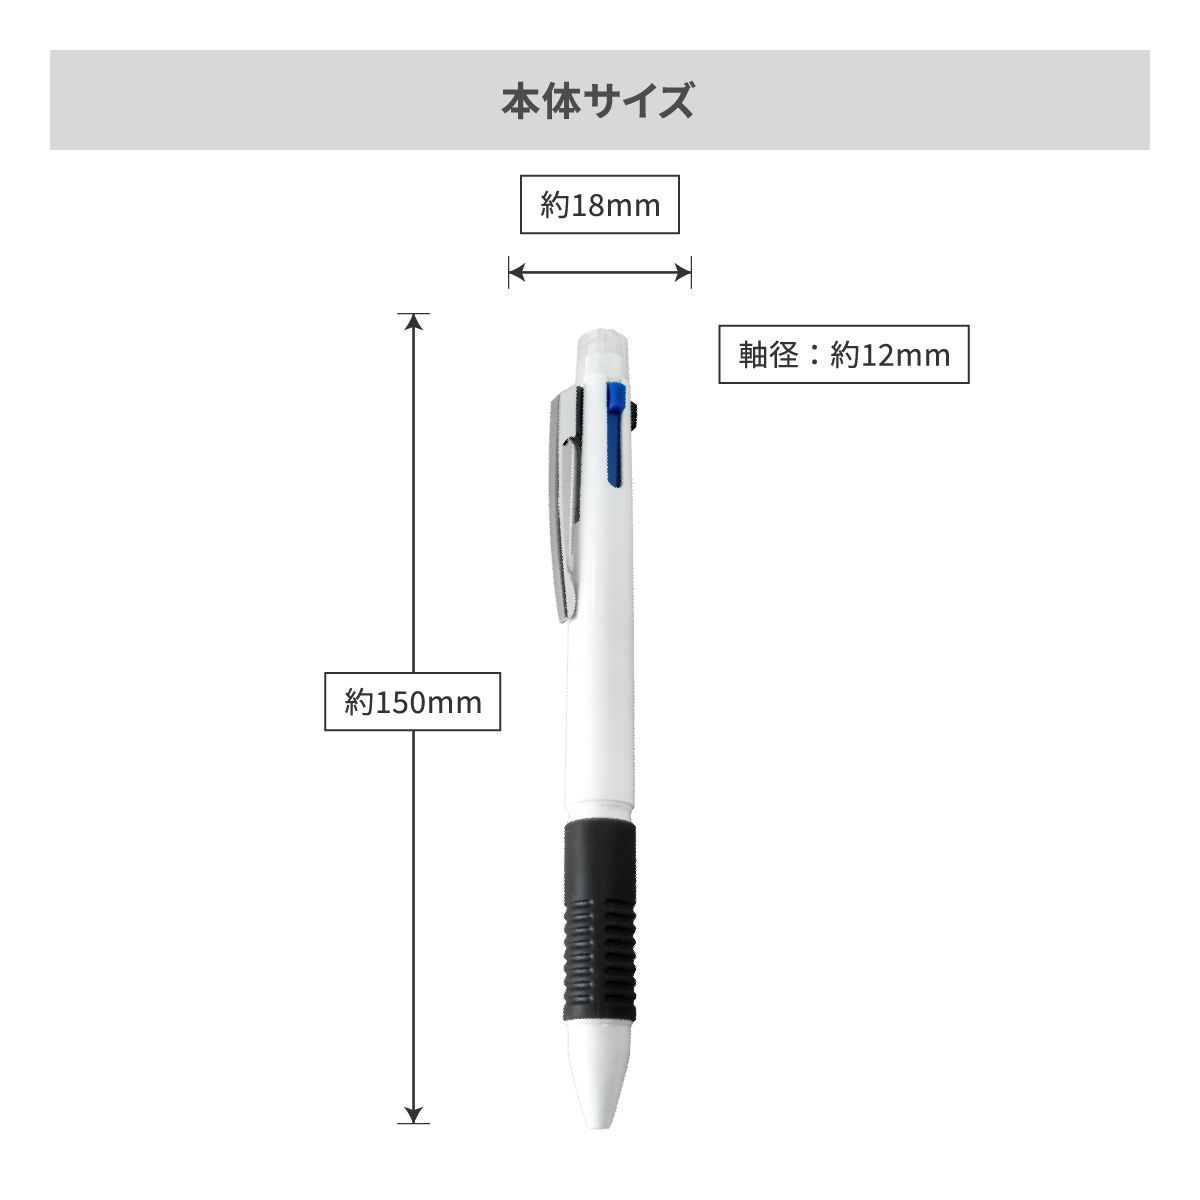 マルチ4ファンクションペン【多機能ペン / パッド印刷】 画像5